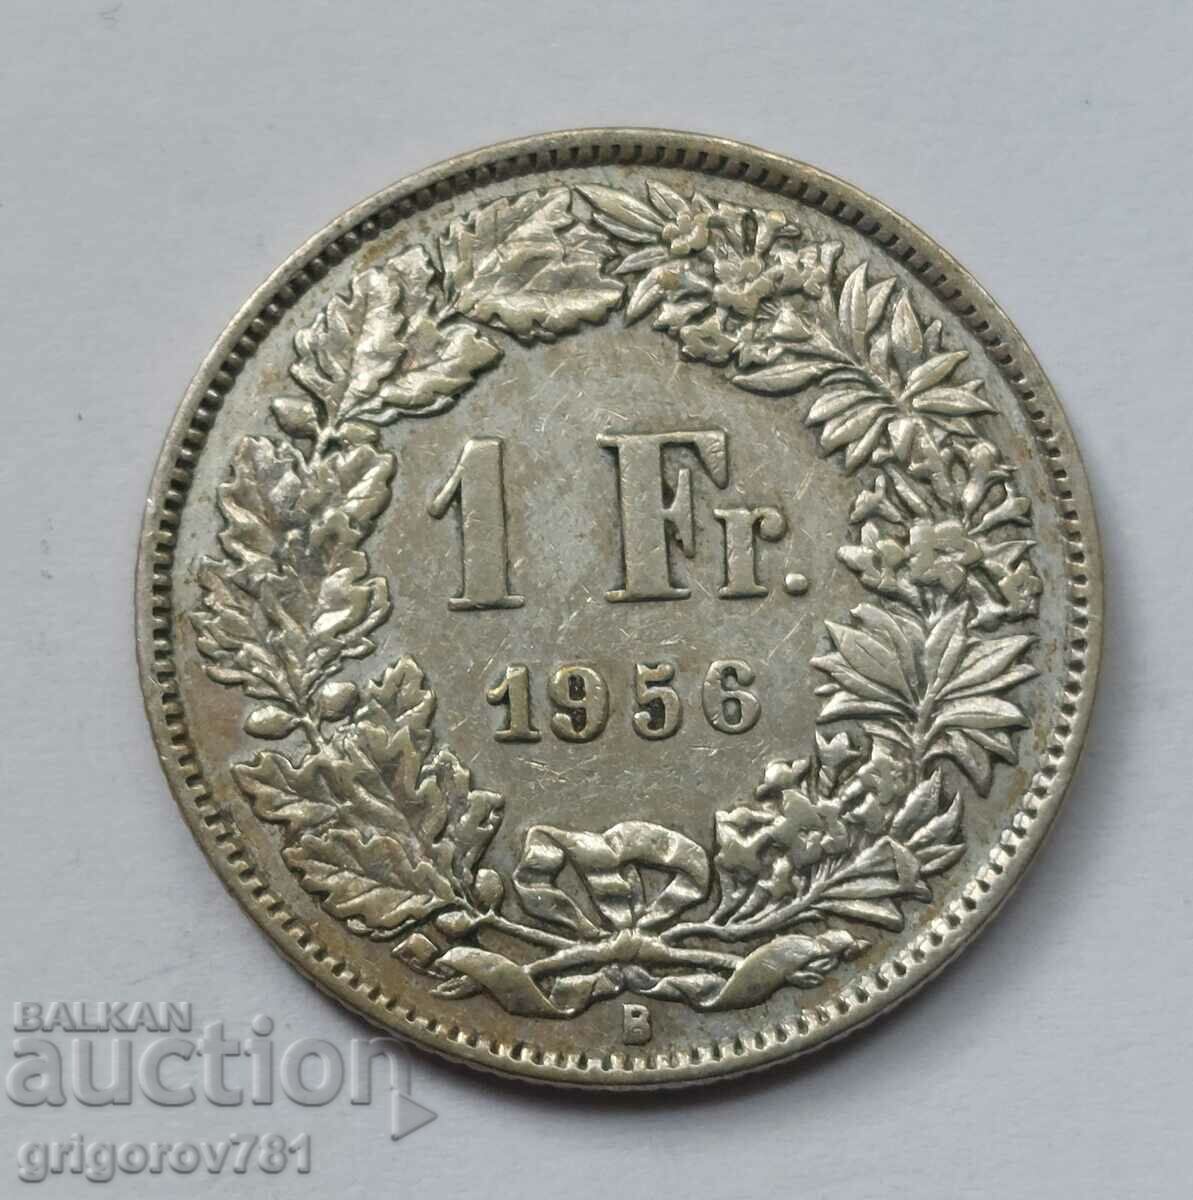 Ασημένιο 1 Φράγκο Ελβετία 1956 B - Ασημένιο νόμισμα #20